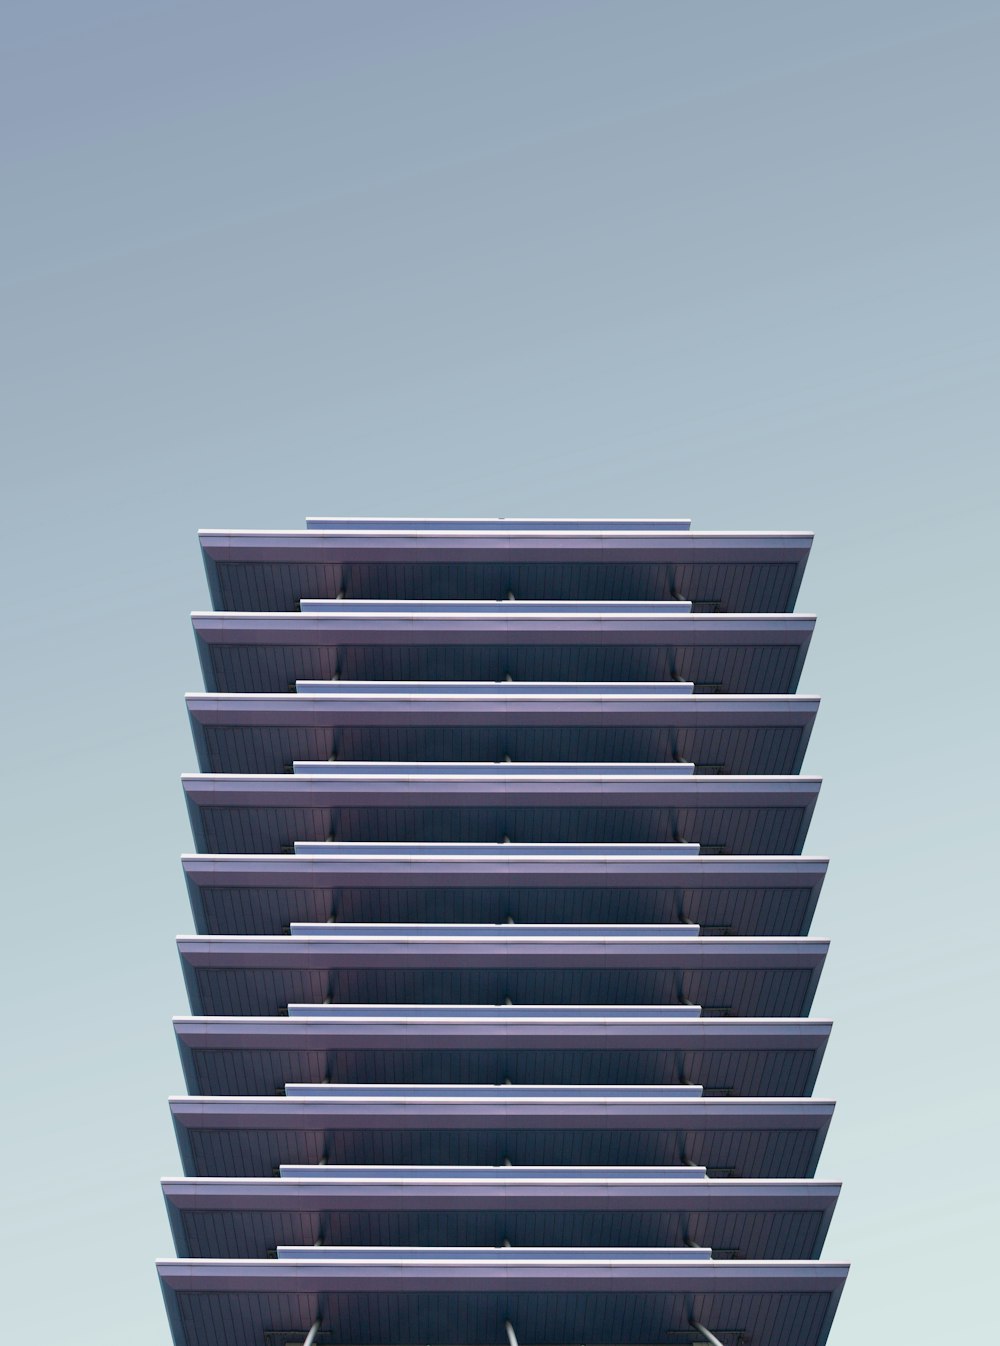 고층 건물의 건축 사진